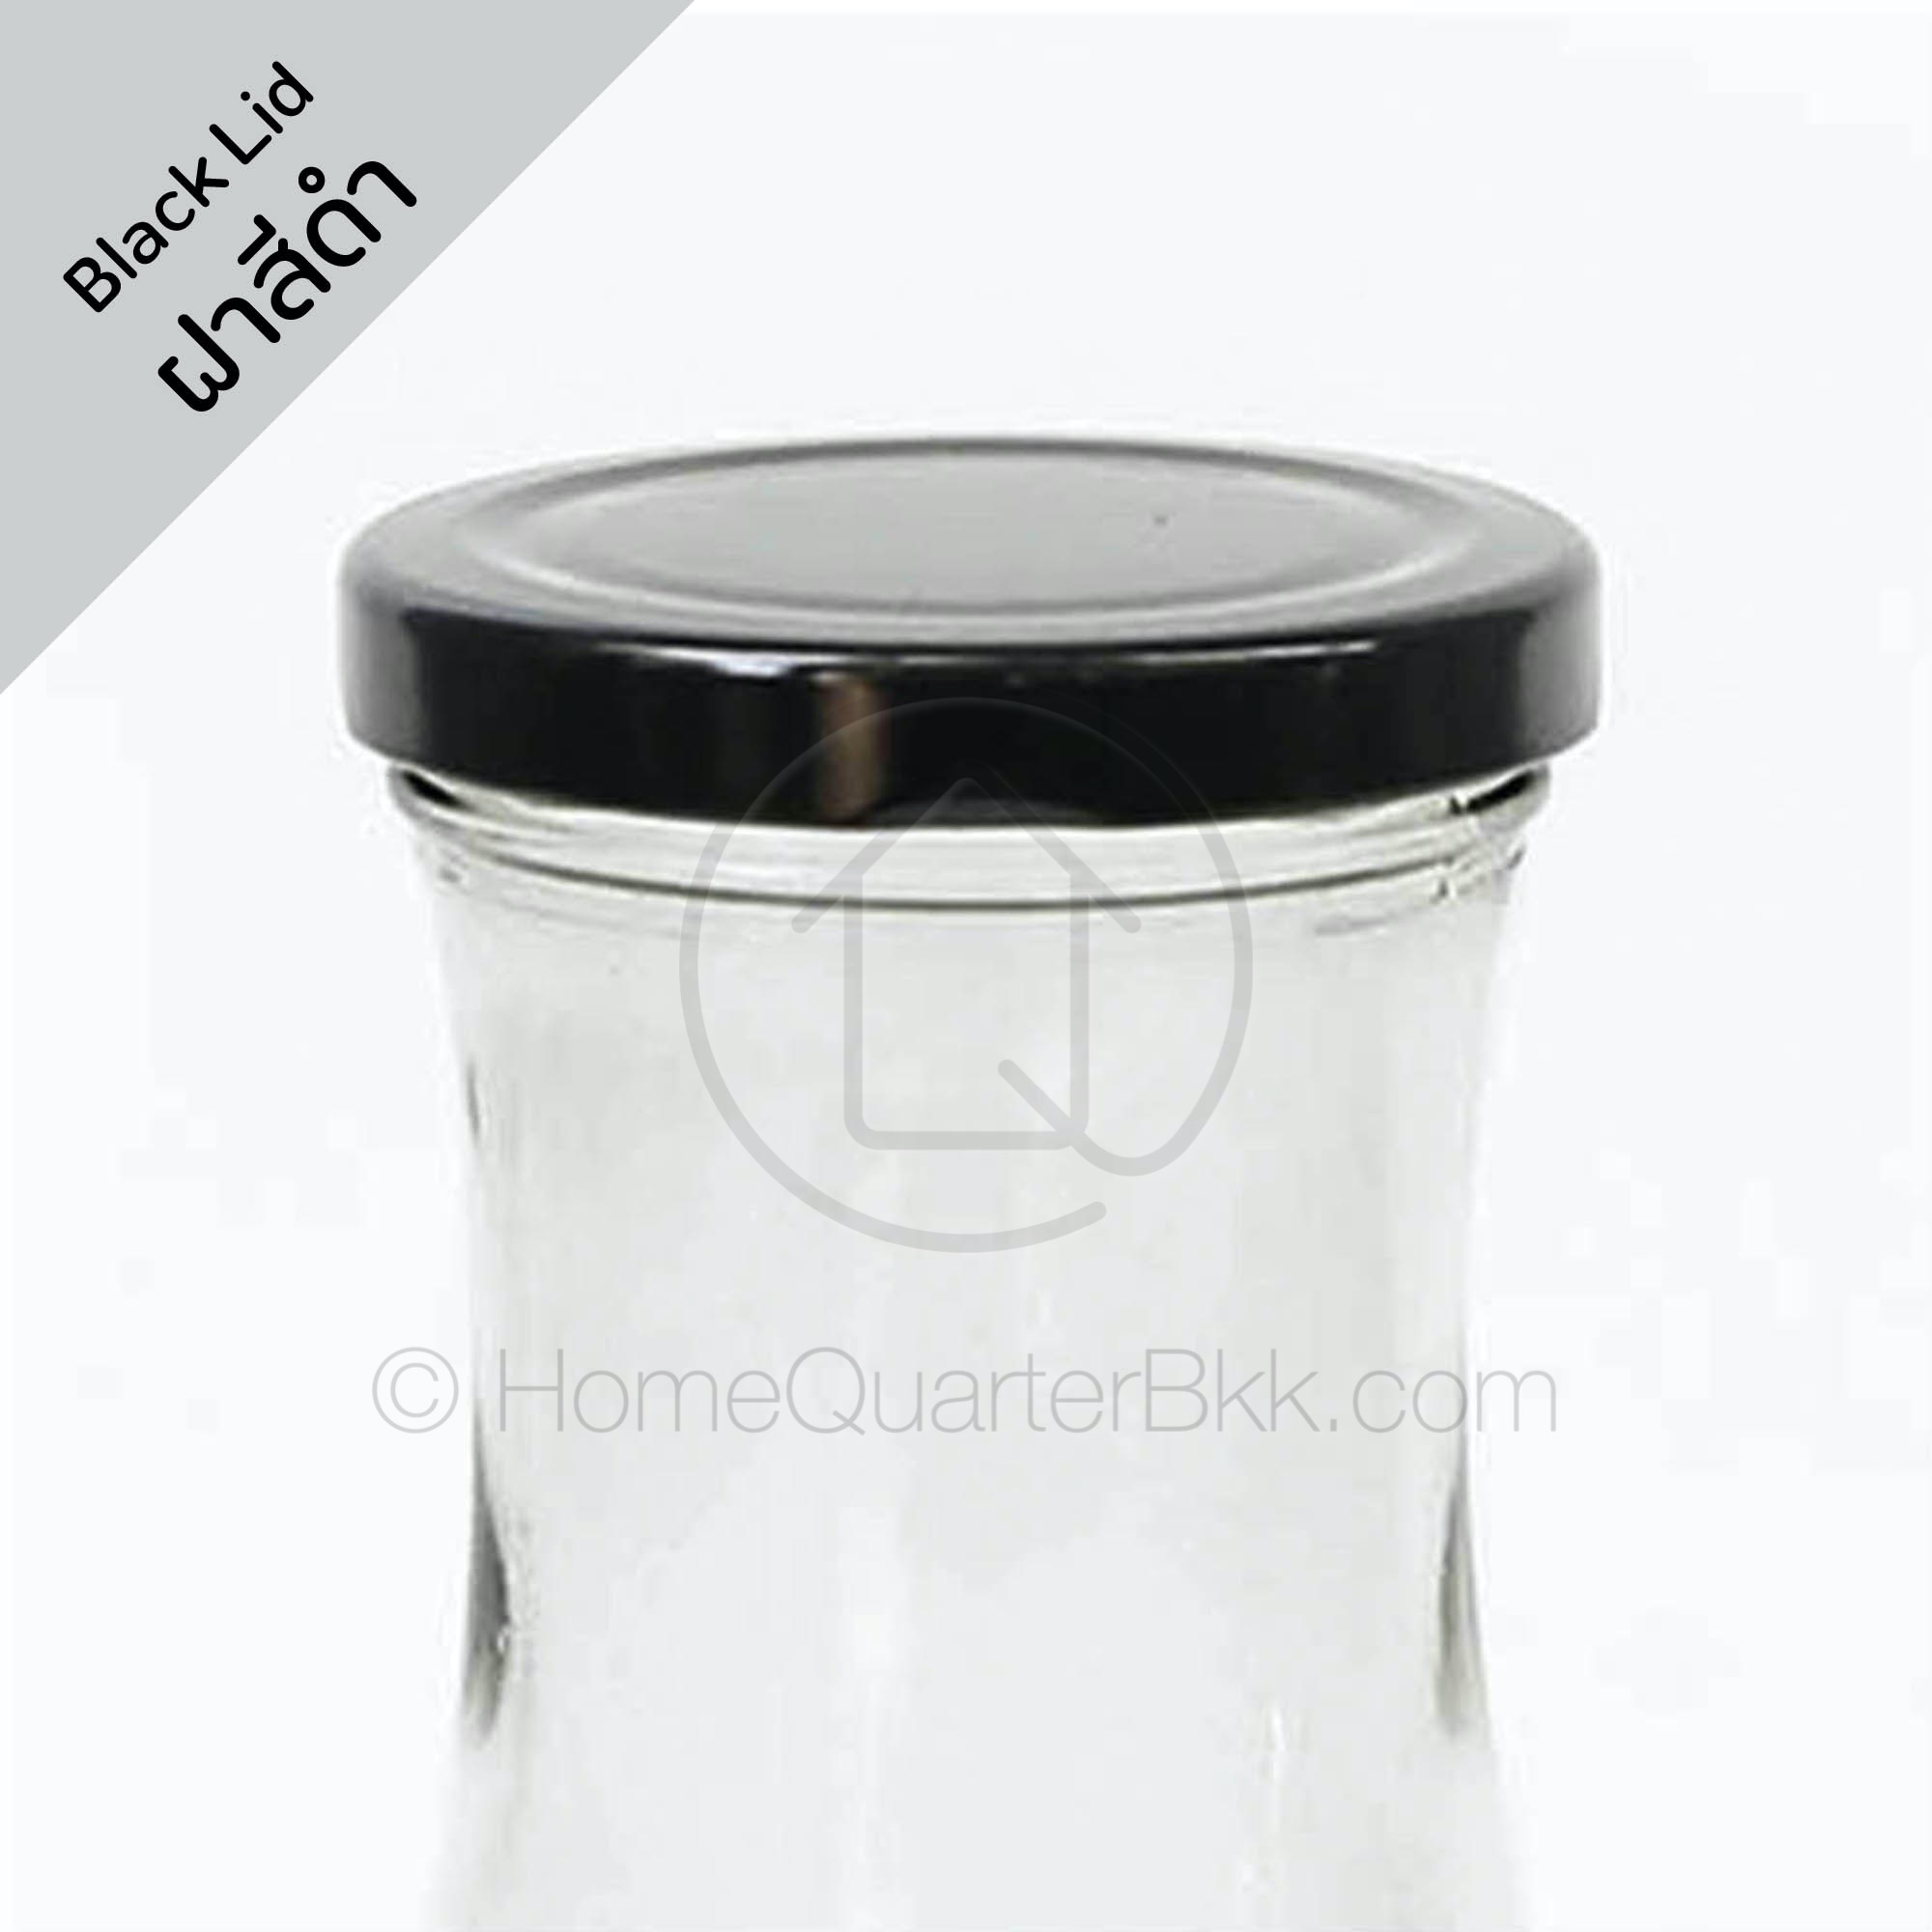 Homequarterbkk-Drinking Bottle with Silver/Copper/Black Lid 1000 ml ขวด แก้ว น้ำ เครื่องดื่ม แจกัน ที่ใส่ ดอกไม้ น้ำผลไม้ ฝาโลหะ ฝามี 3 สีให้เลือก สีเงิน/ สีดำ/สีทองแดง สี Black Lid สี Black Lid